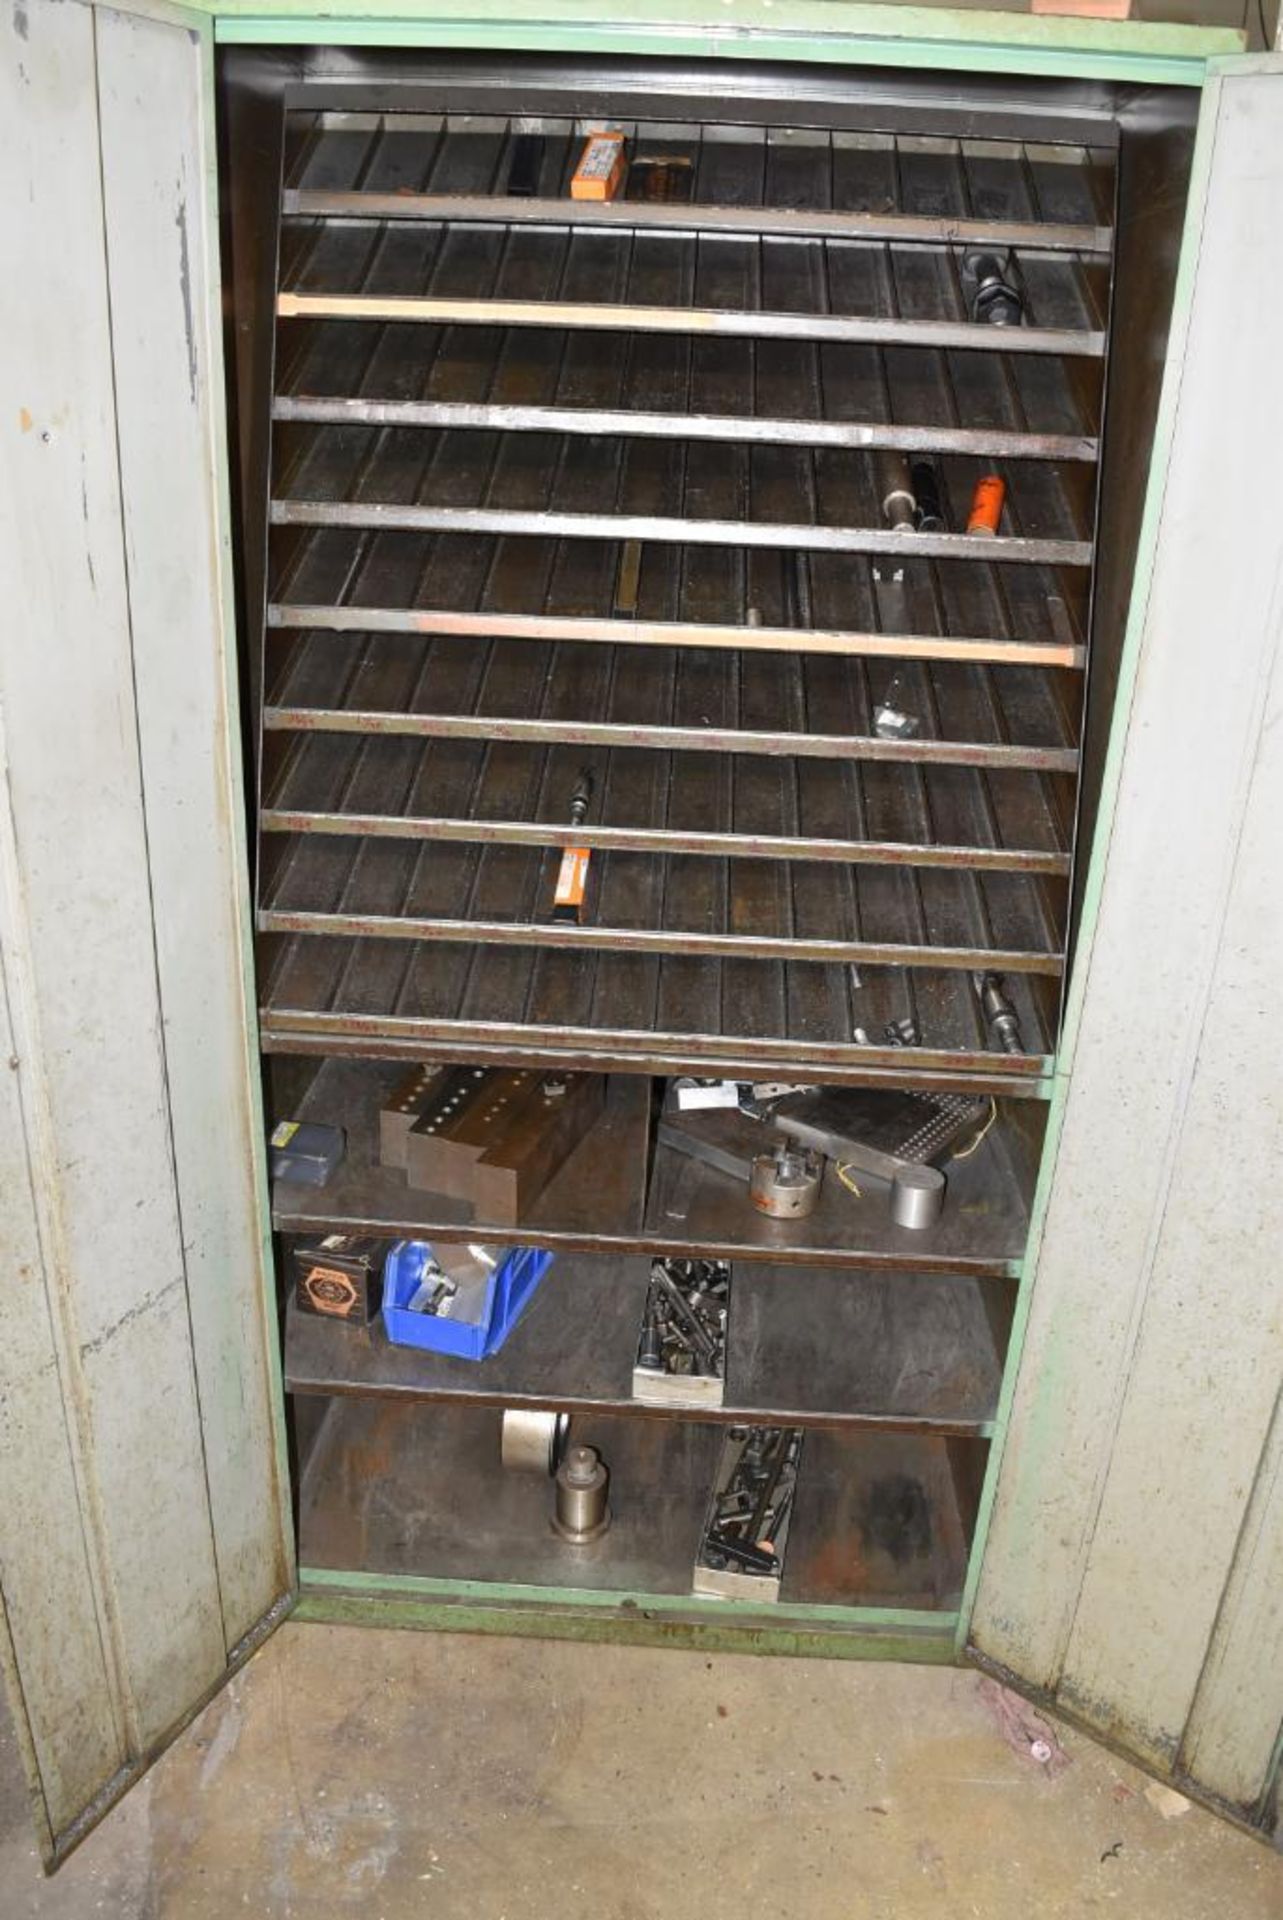 2-Door Metal Storage Cabinet w/Contents, see photos - Image 2 of 3